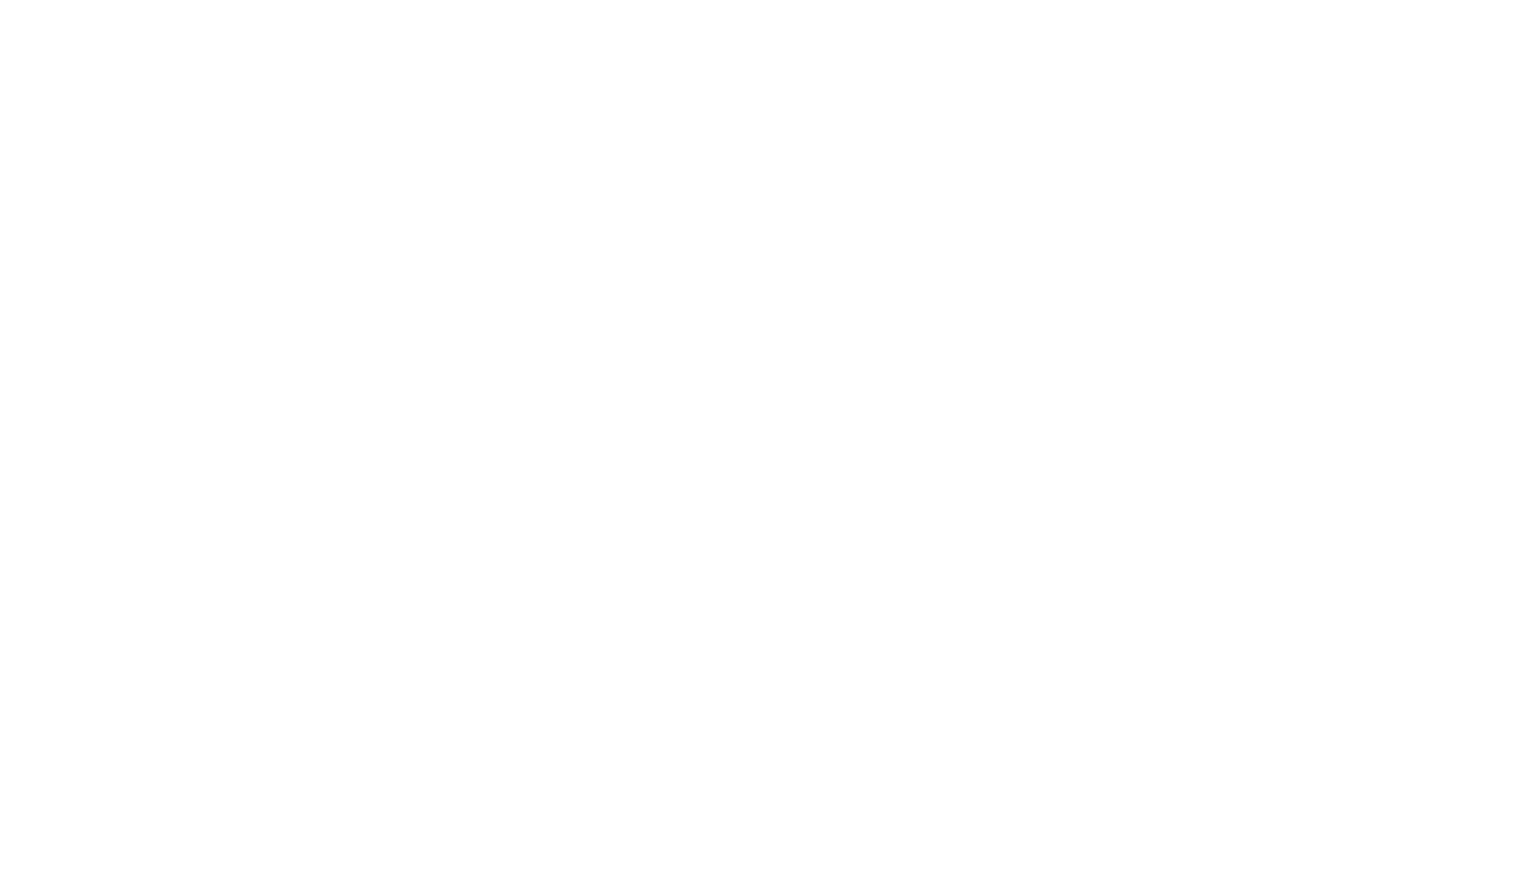 Abu Dhabi Aviation logo large for dark backgrounds (transparent PNG)